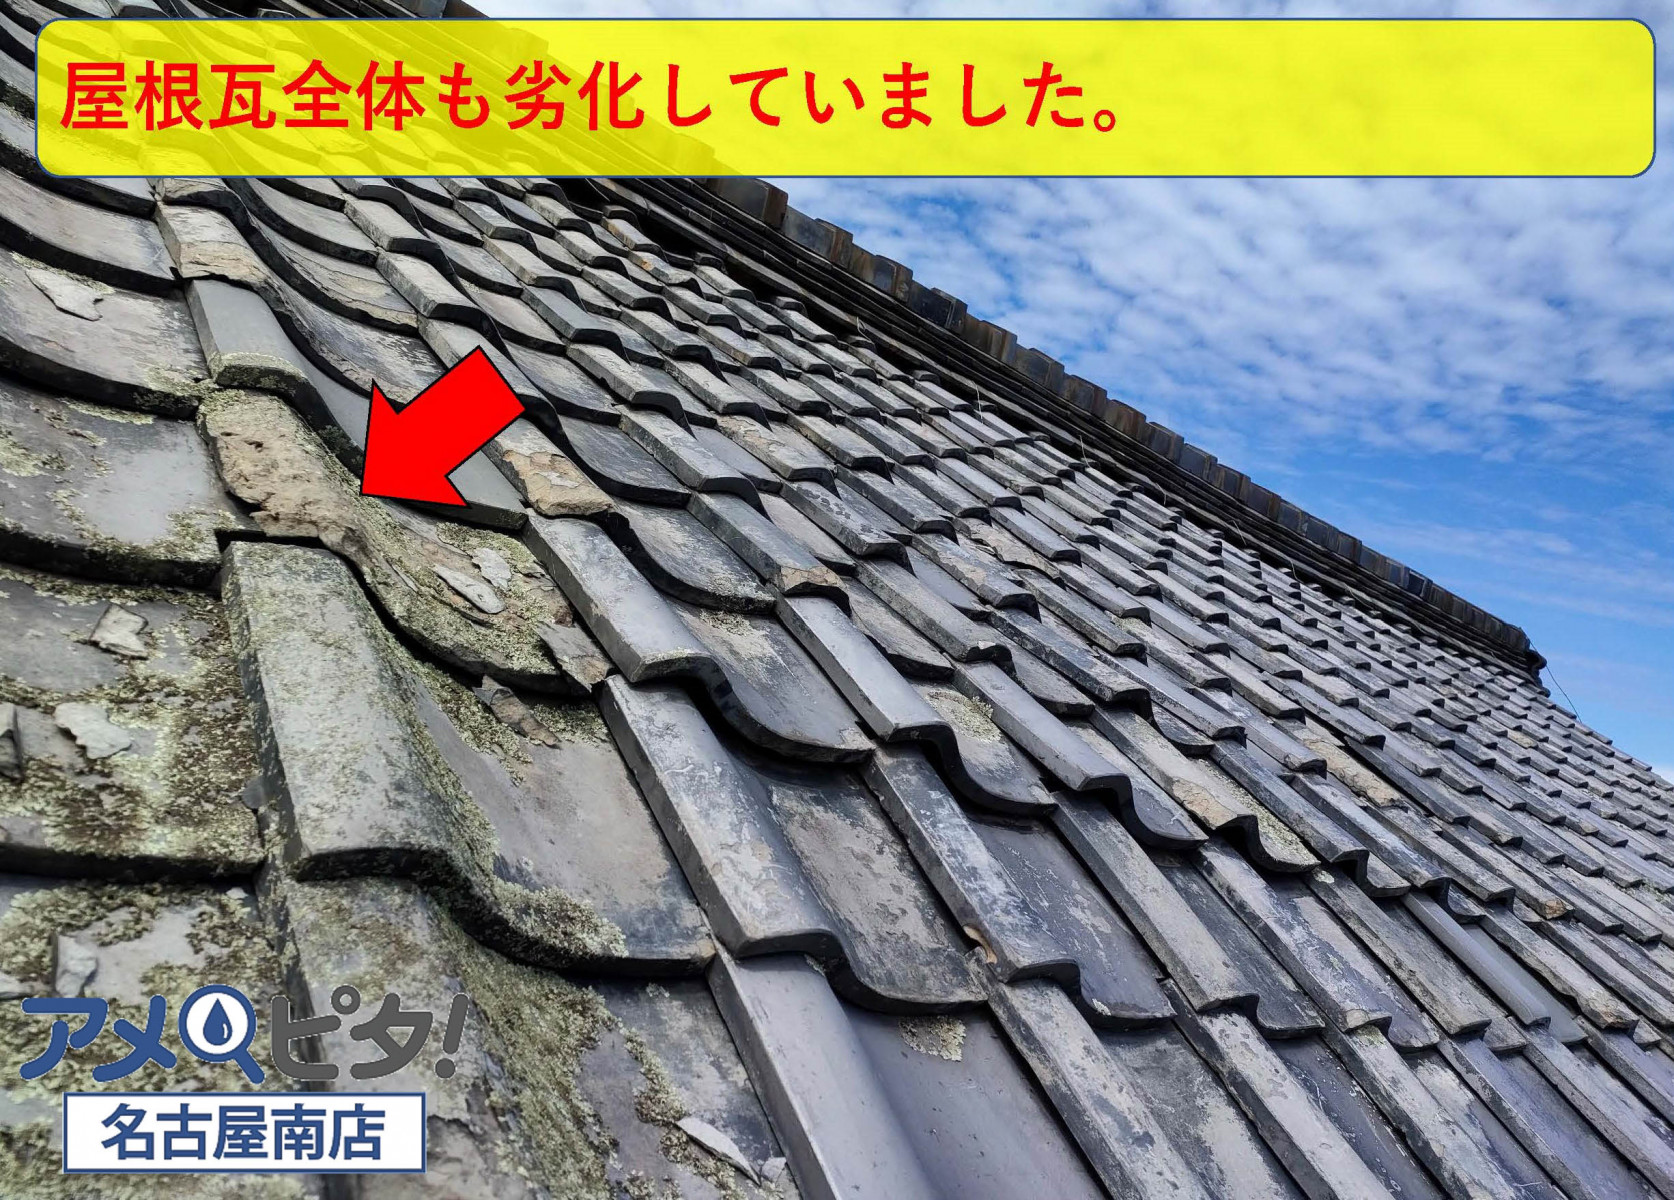 屋根全体に使われている屋根瓦も経年劣化が激しくなっています